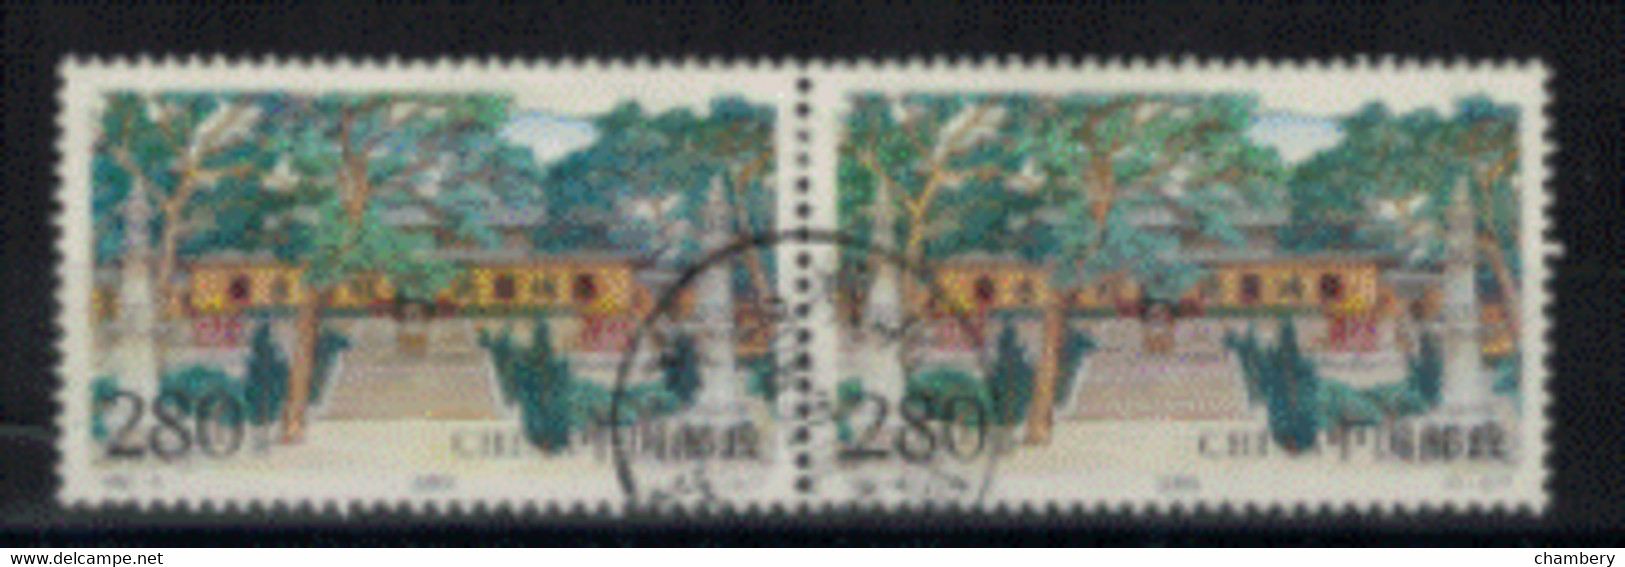 Chine - "Beauté Des Monts Putuo" - Paire Oblitérée N° 3682 De 1999 - Oblitérés